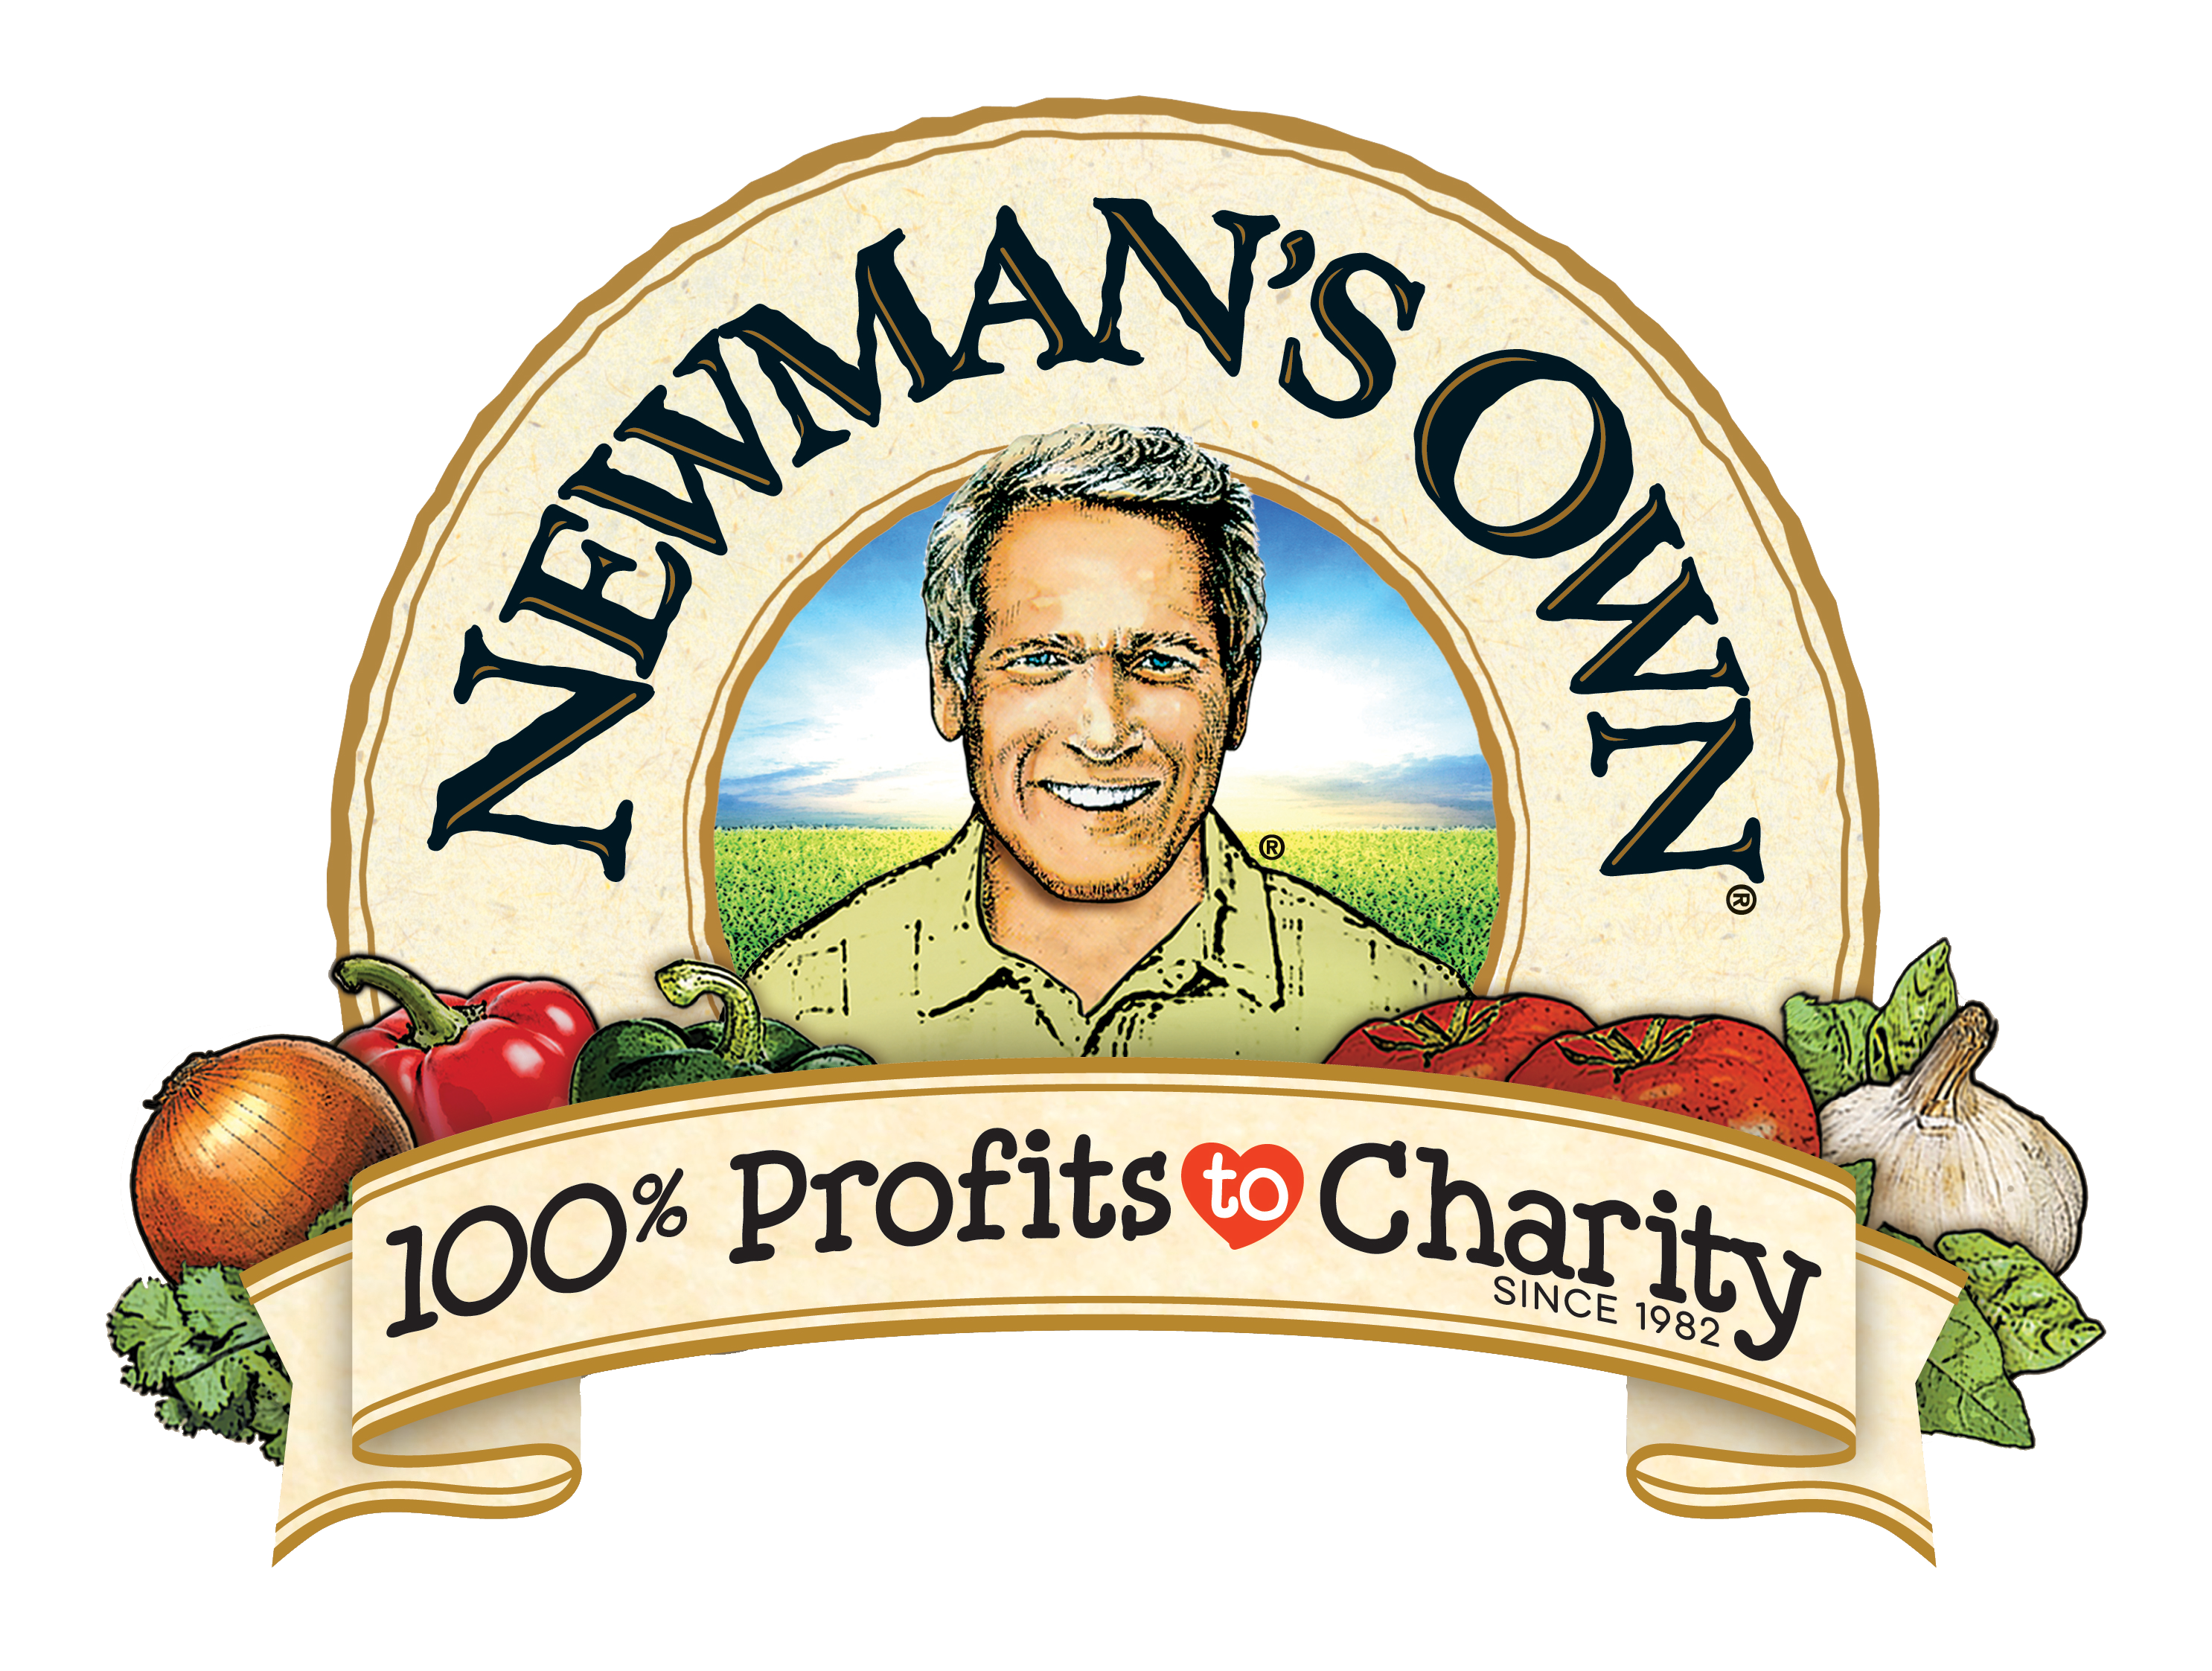 Newmann's Own